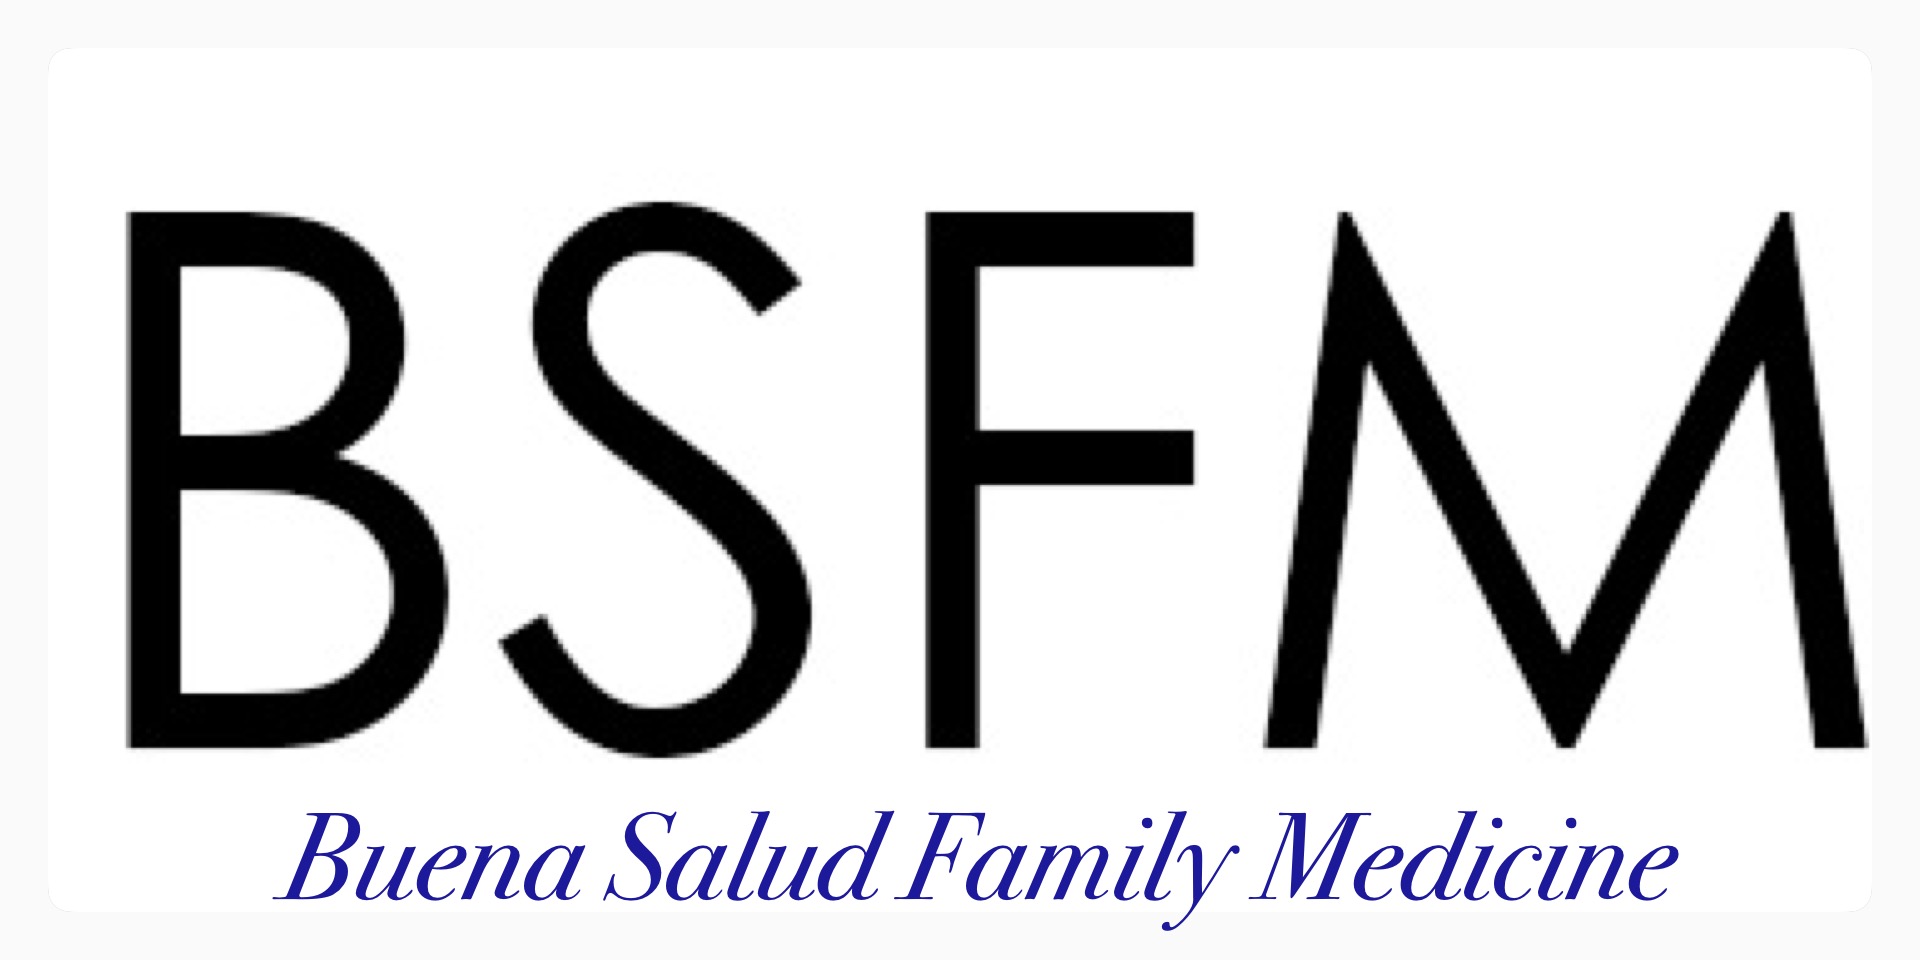 Buena Salud Family Medicine